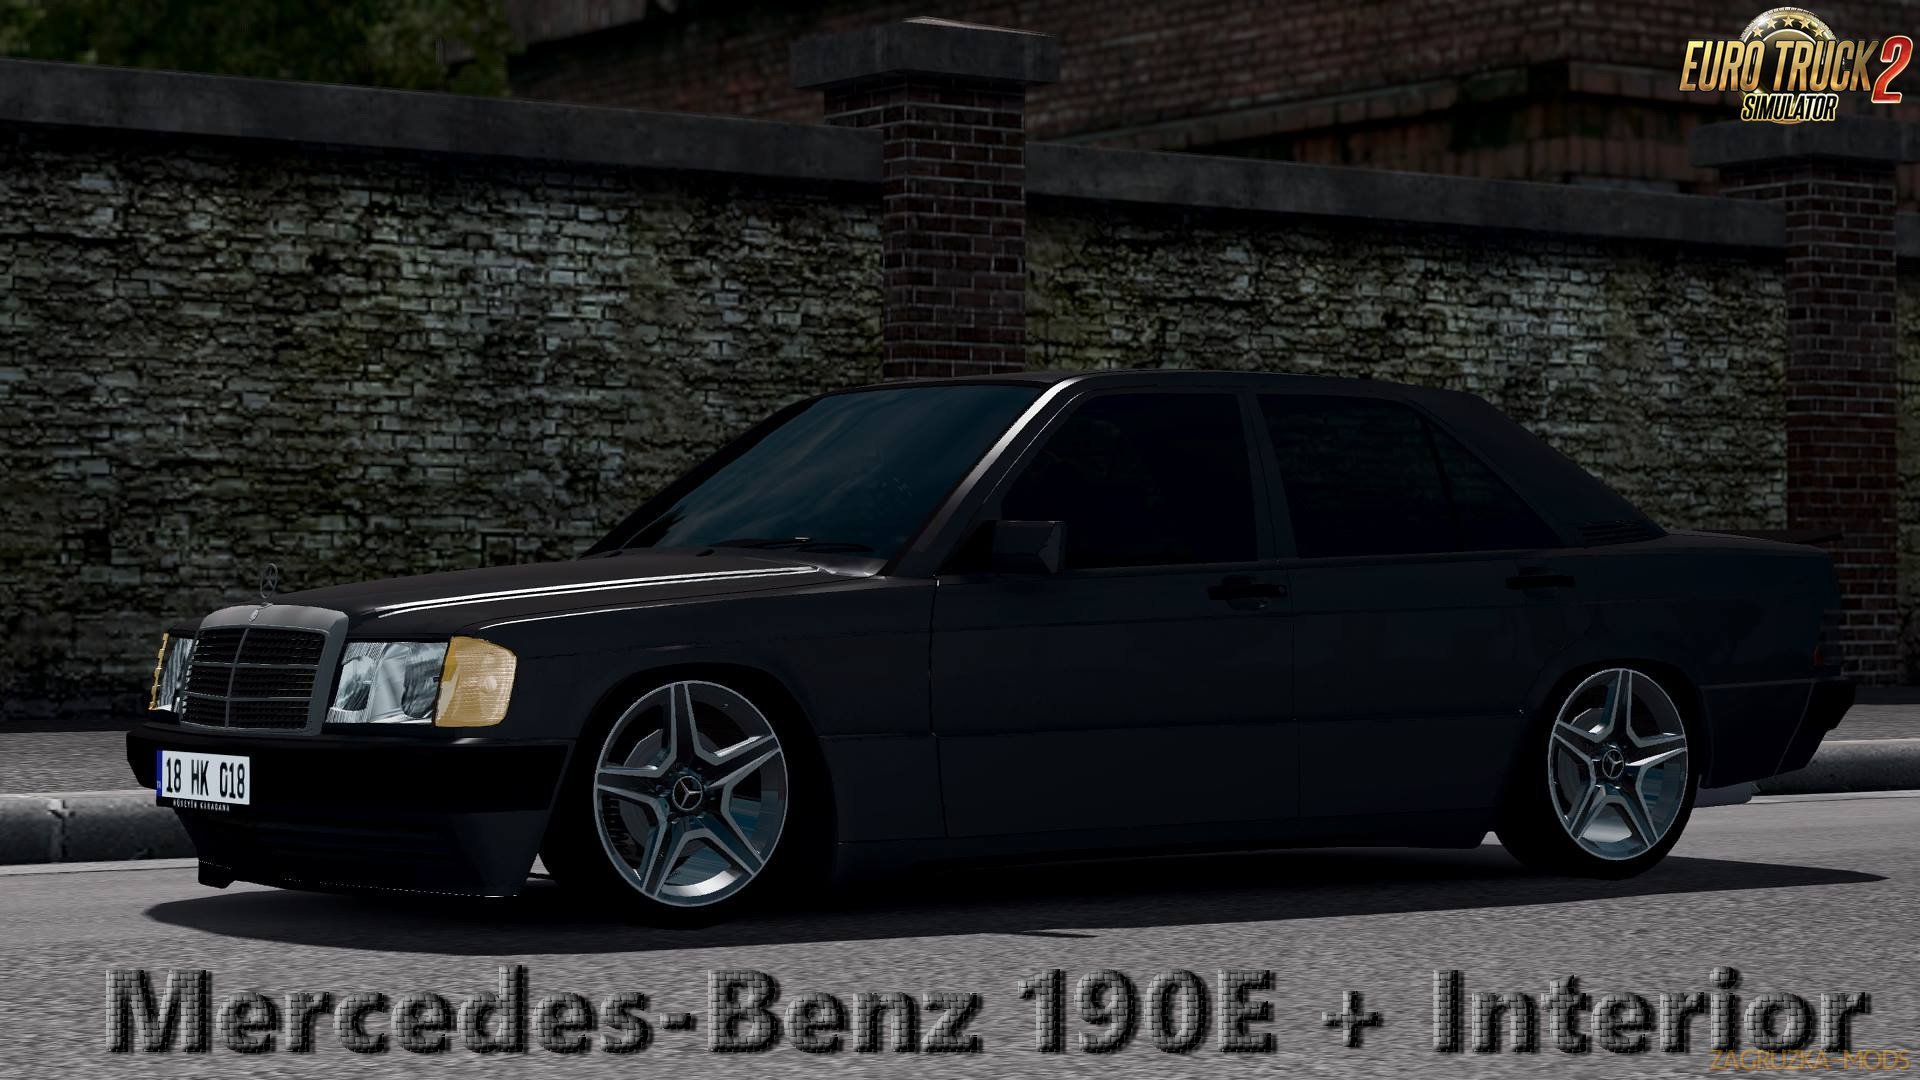 Mercedes-Benz 190E + Interior v1.0 (1.28.x) for ETS 2